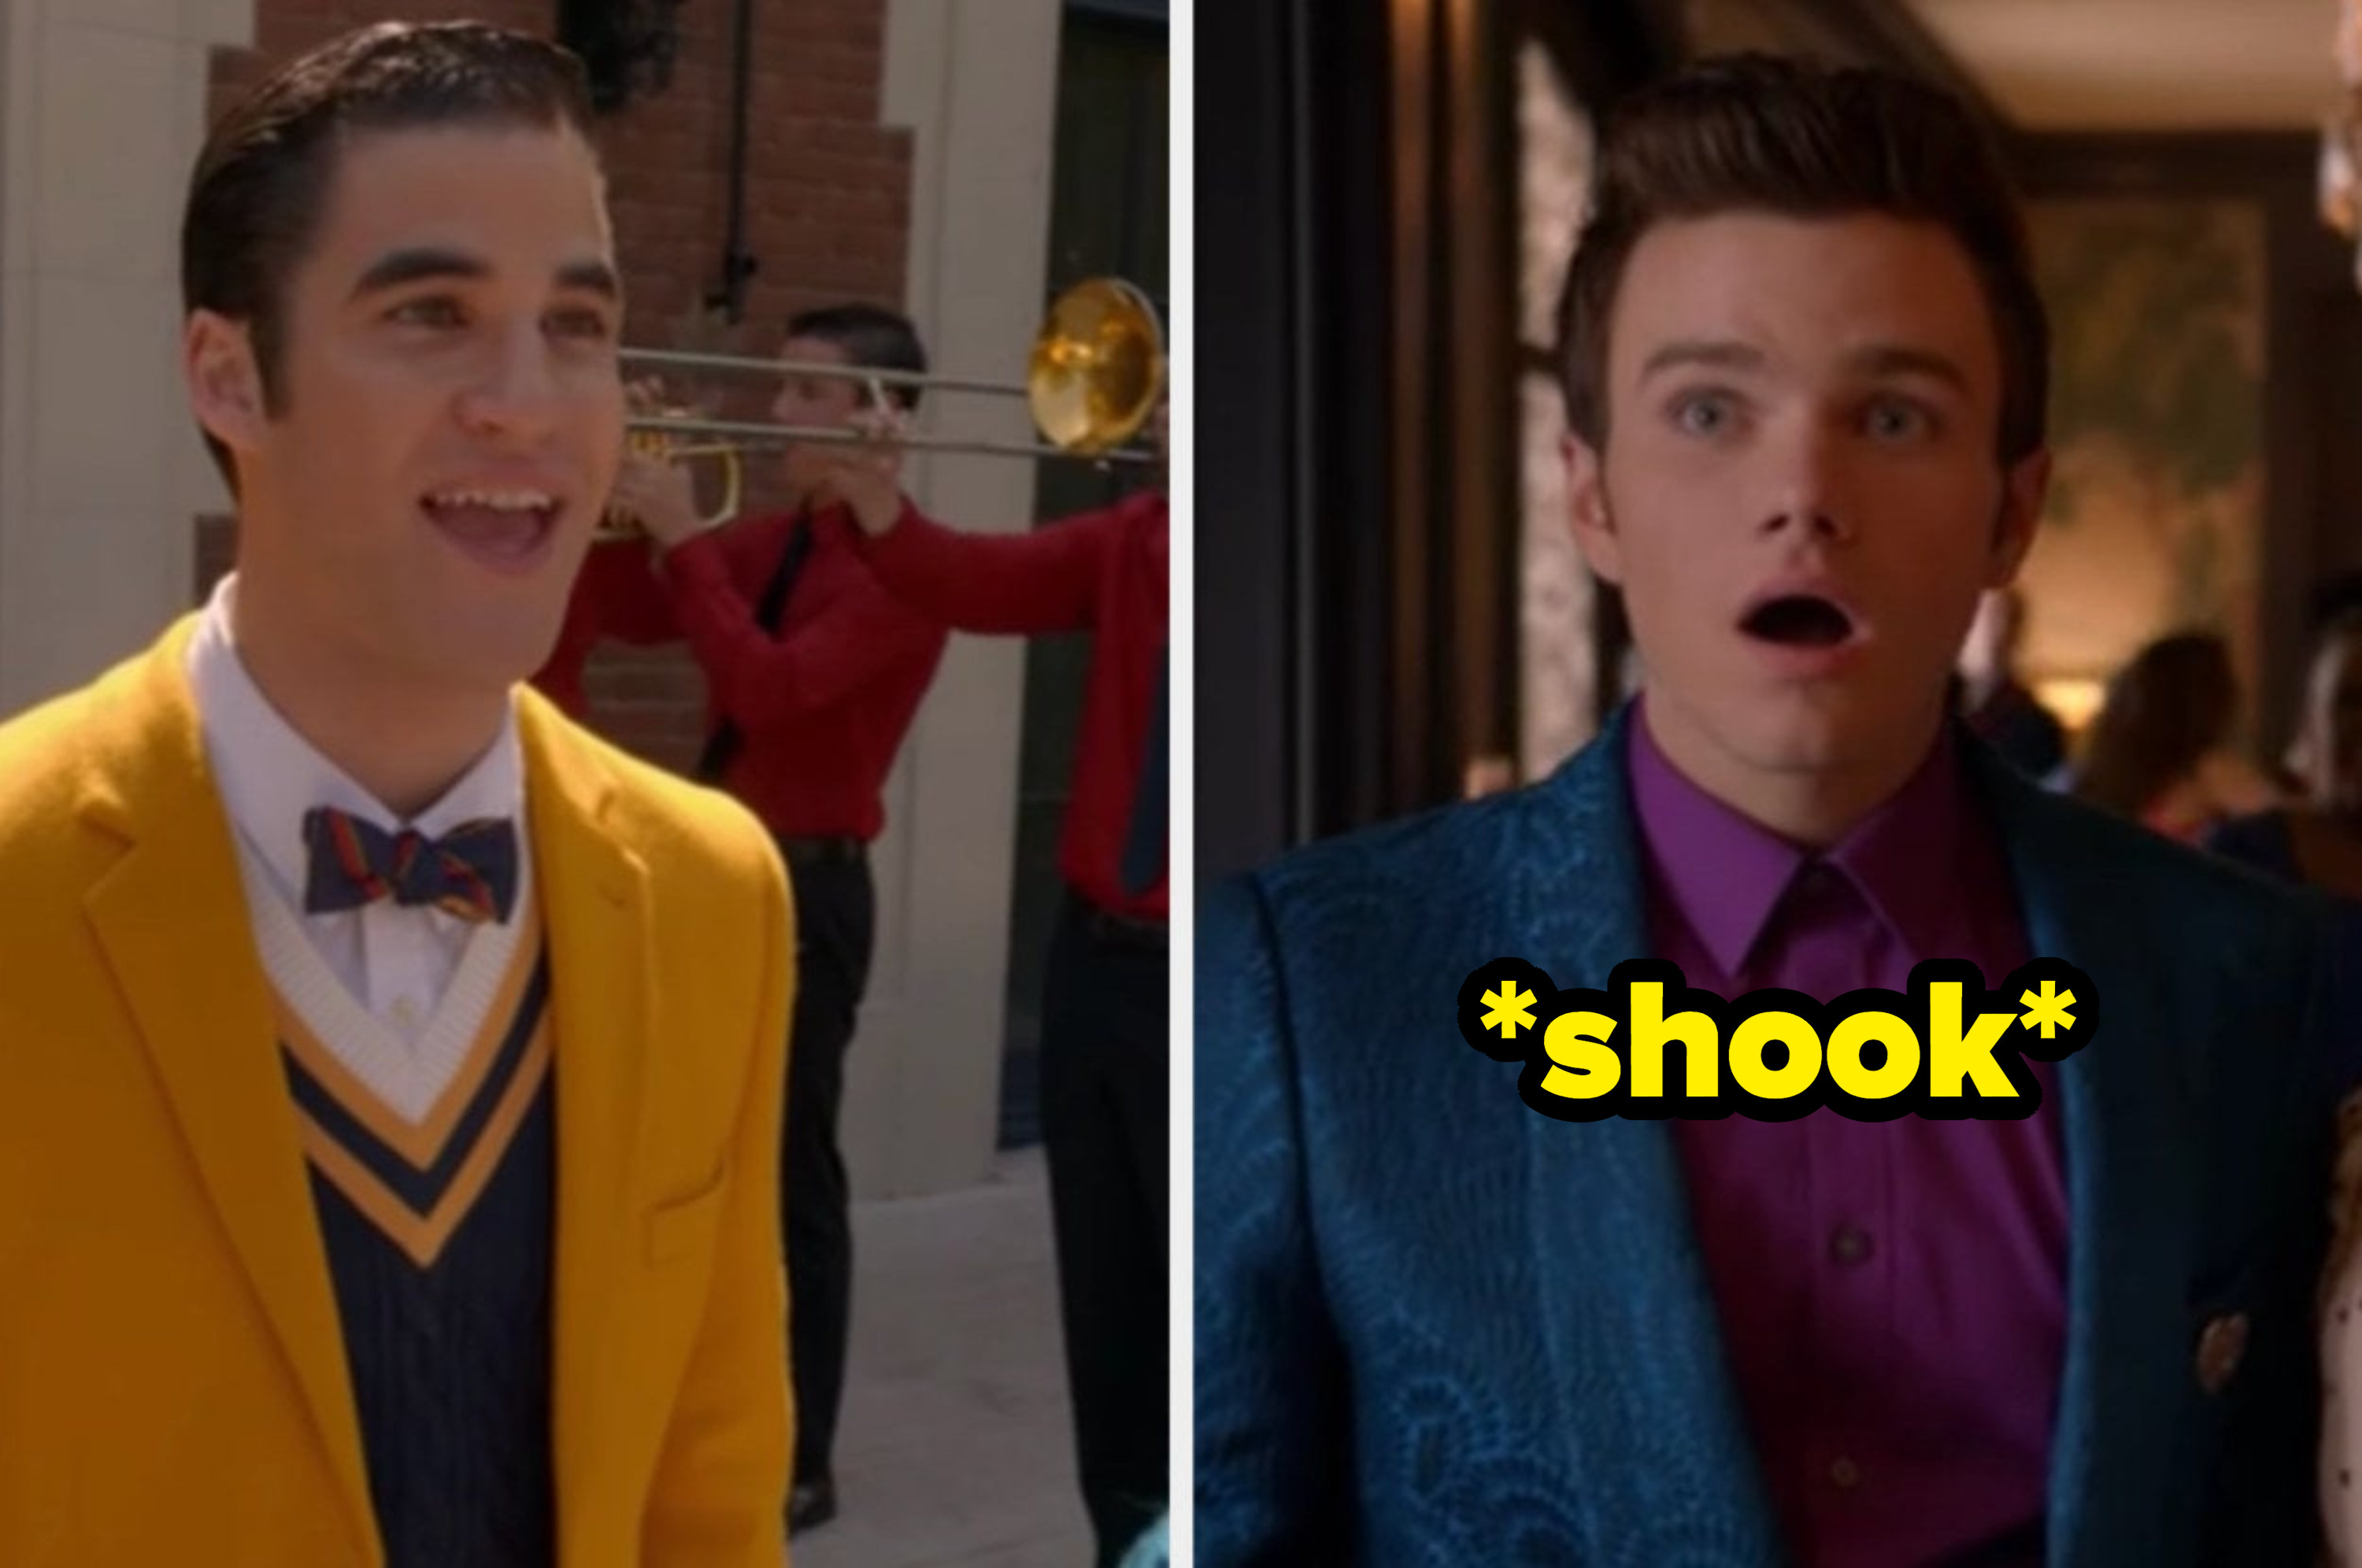 Blaine elaborately proposes to Kurt